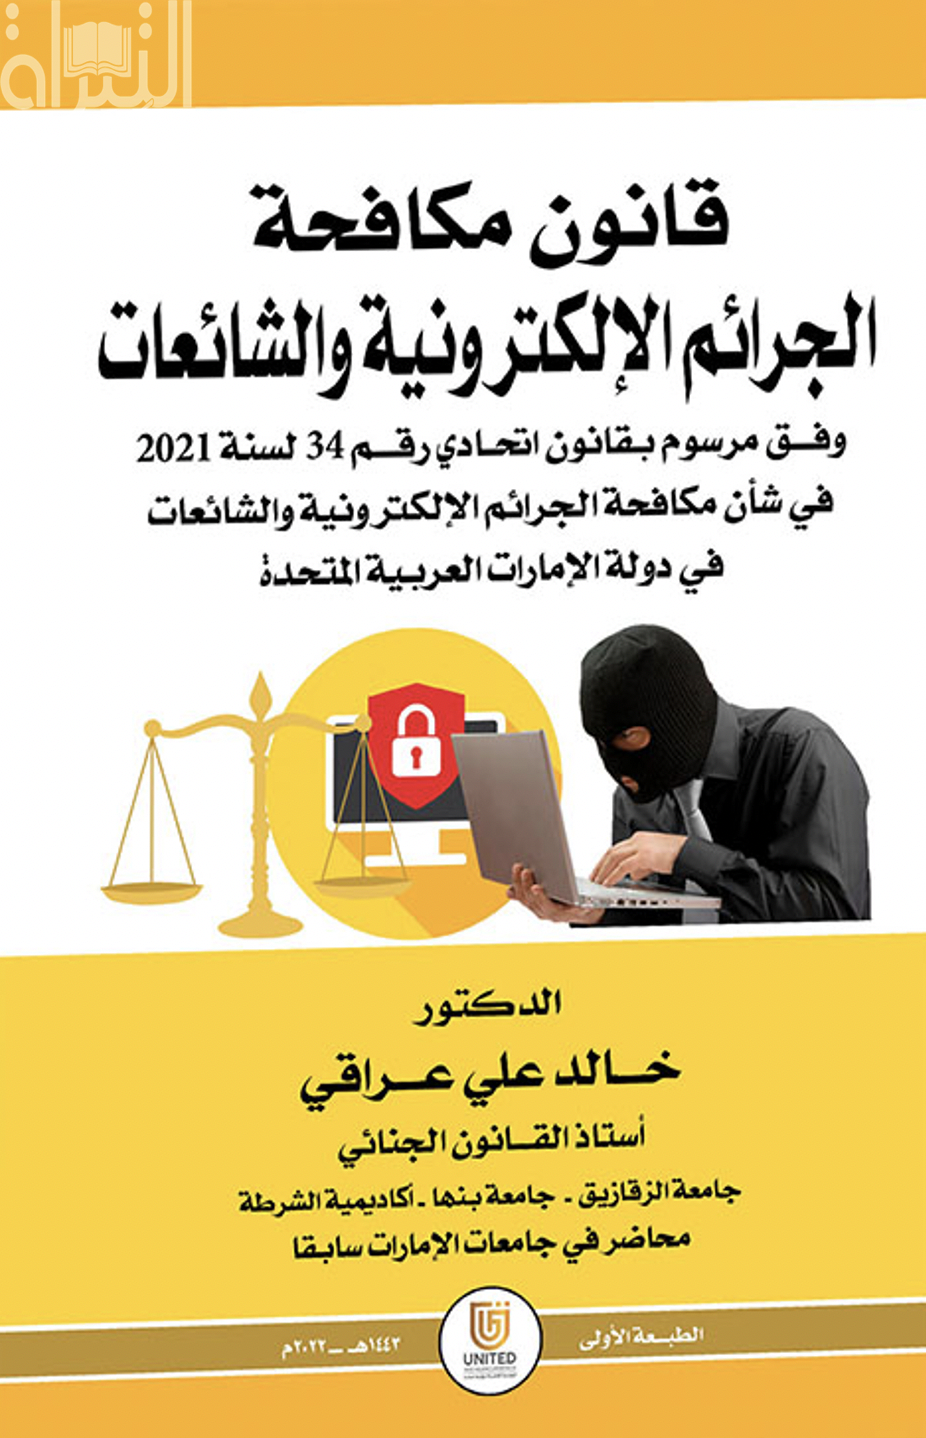 قانون مكافحة الجرائم الإلكترونية والشائعات وفق مرسوم بقانون اتحادي رقم 34 لسنة 2021 في شأن مكافحة الجرائم الإلكترونية والشائعات في دولة الإمارات العربية المتحدة